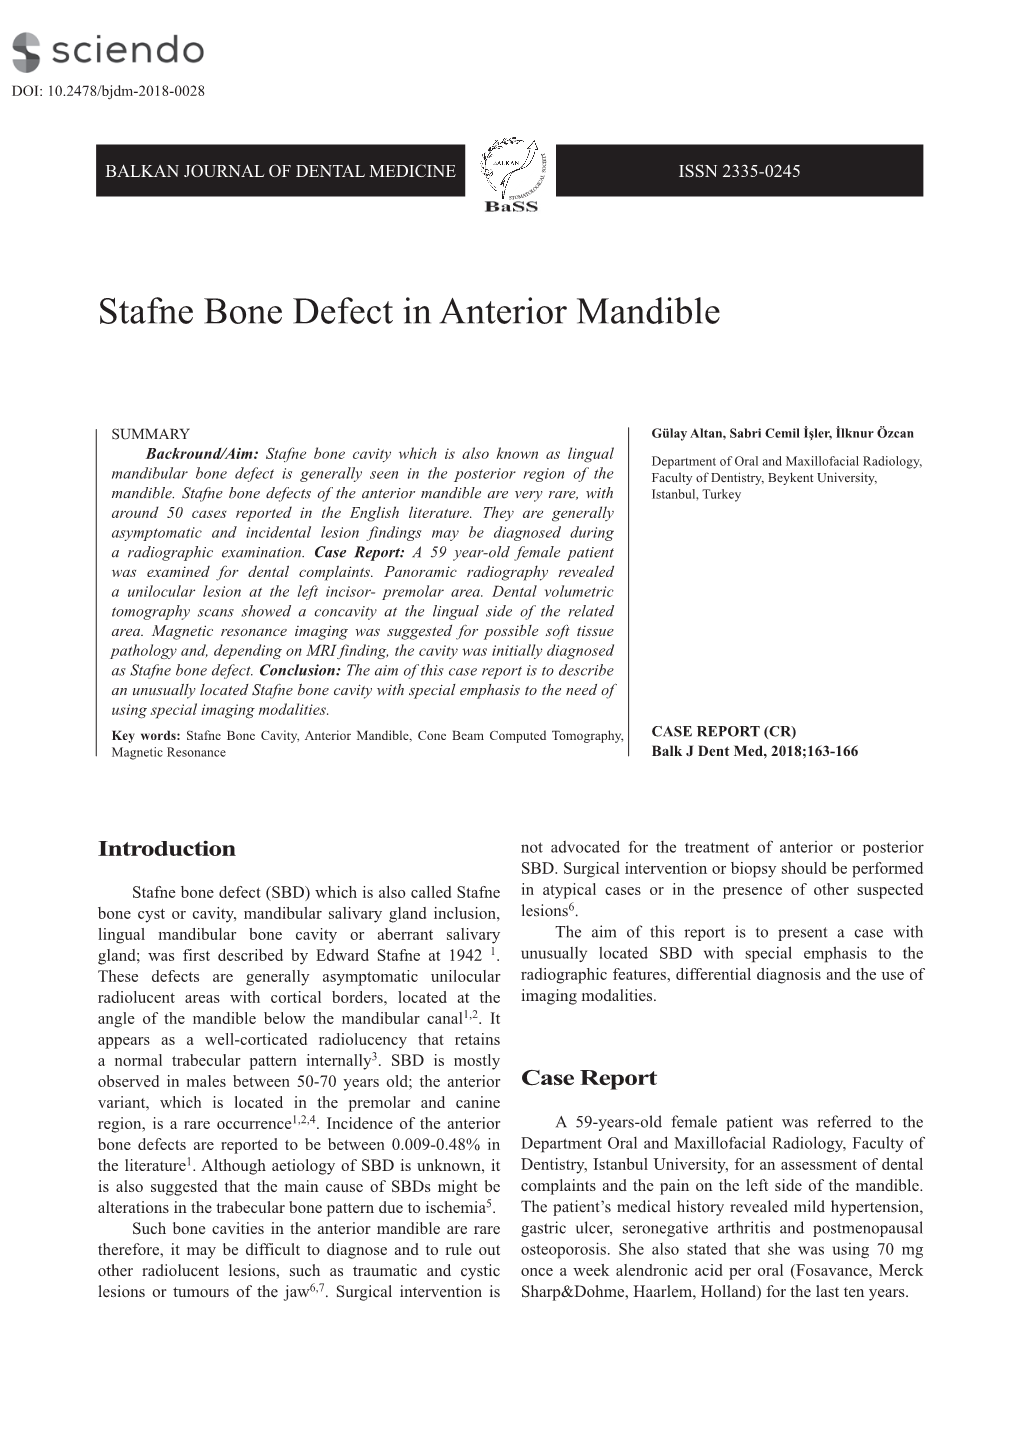 Stafne Bone Defect in Anterior Mandible